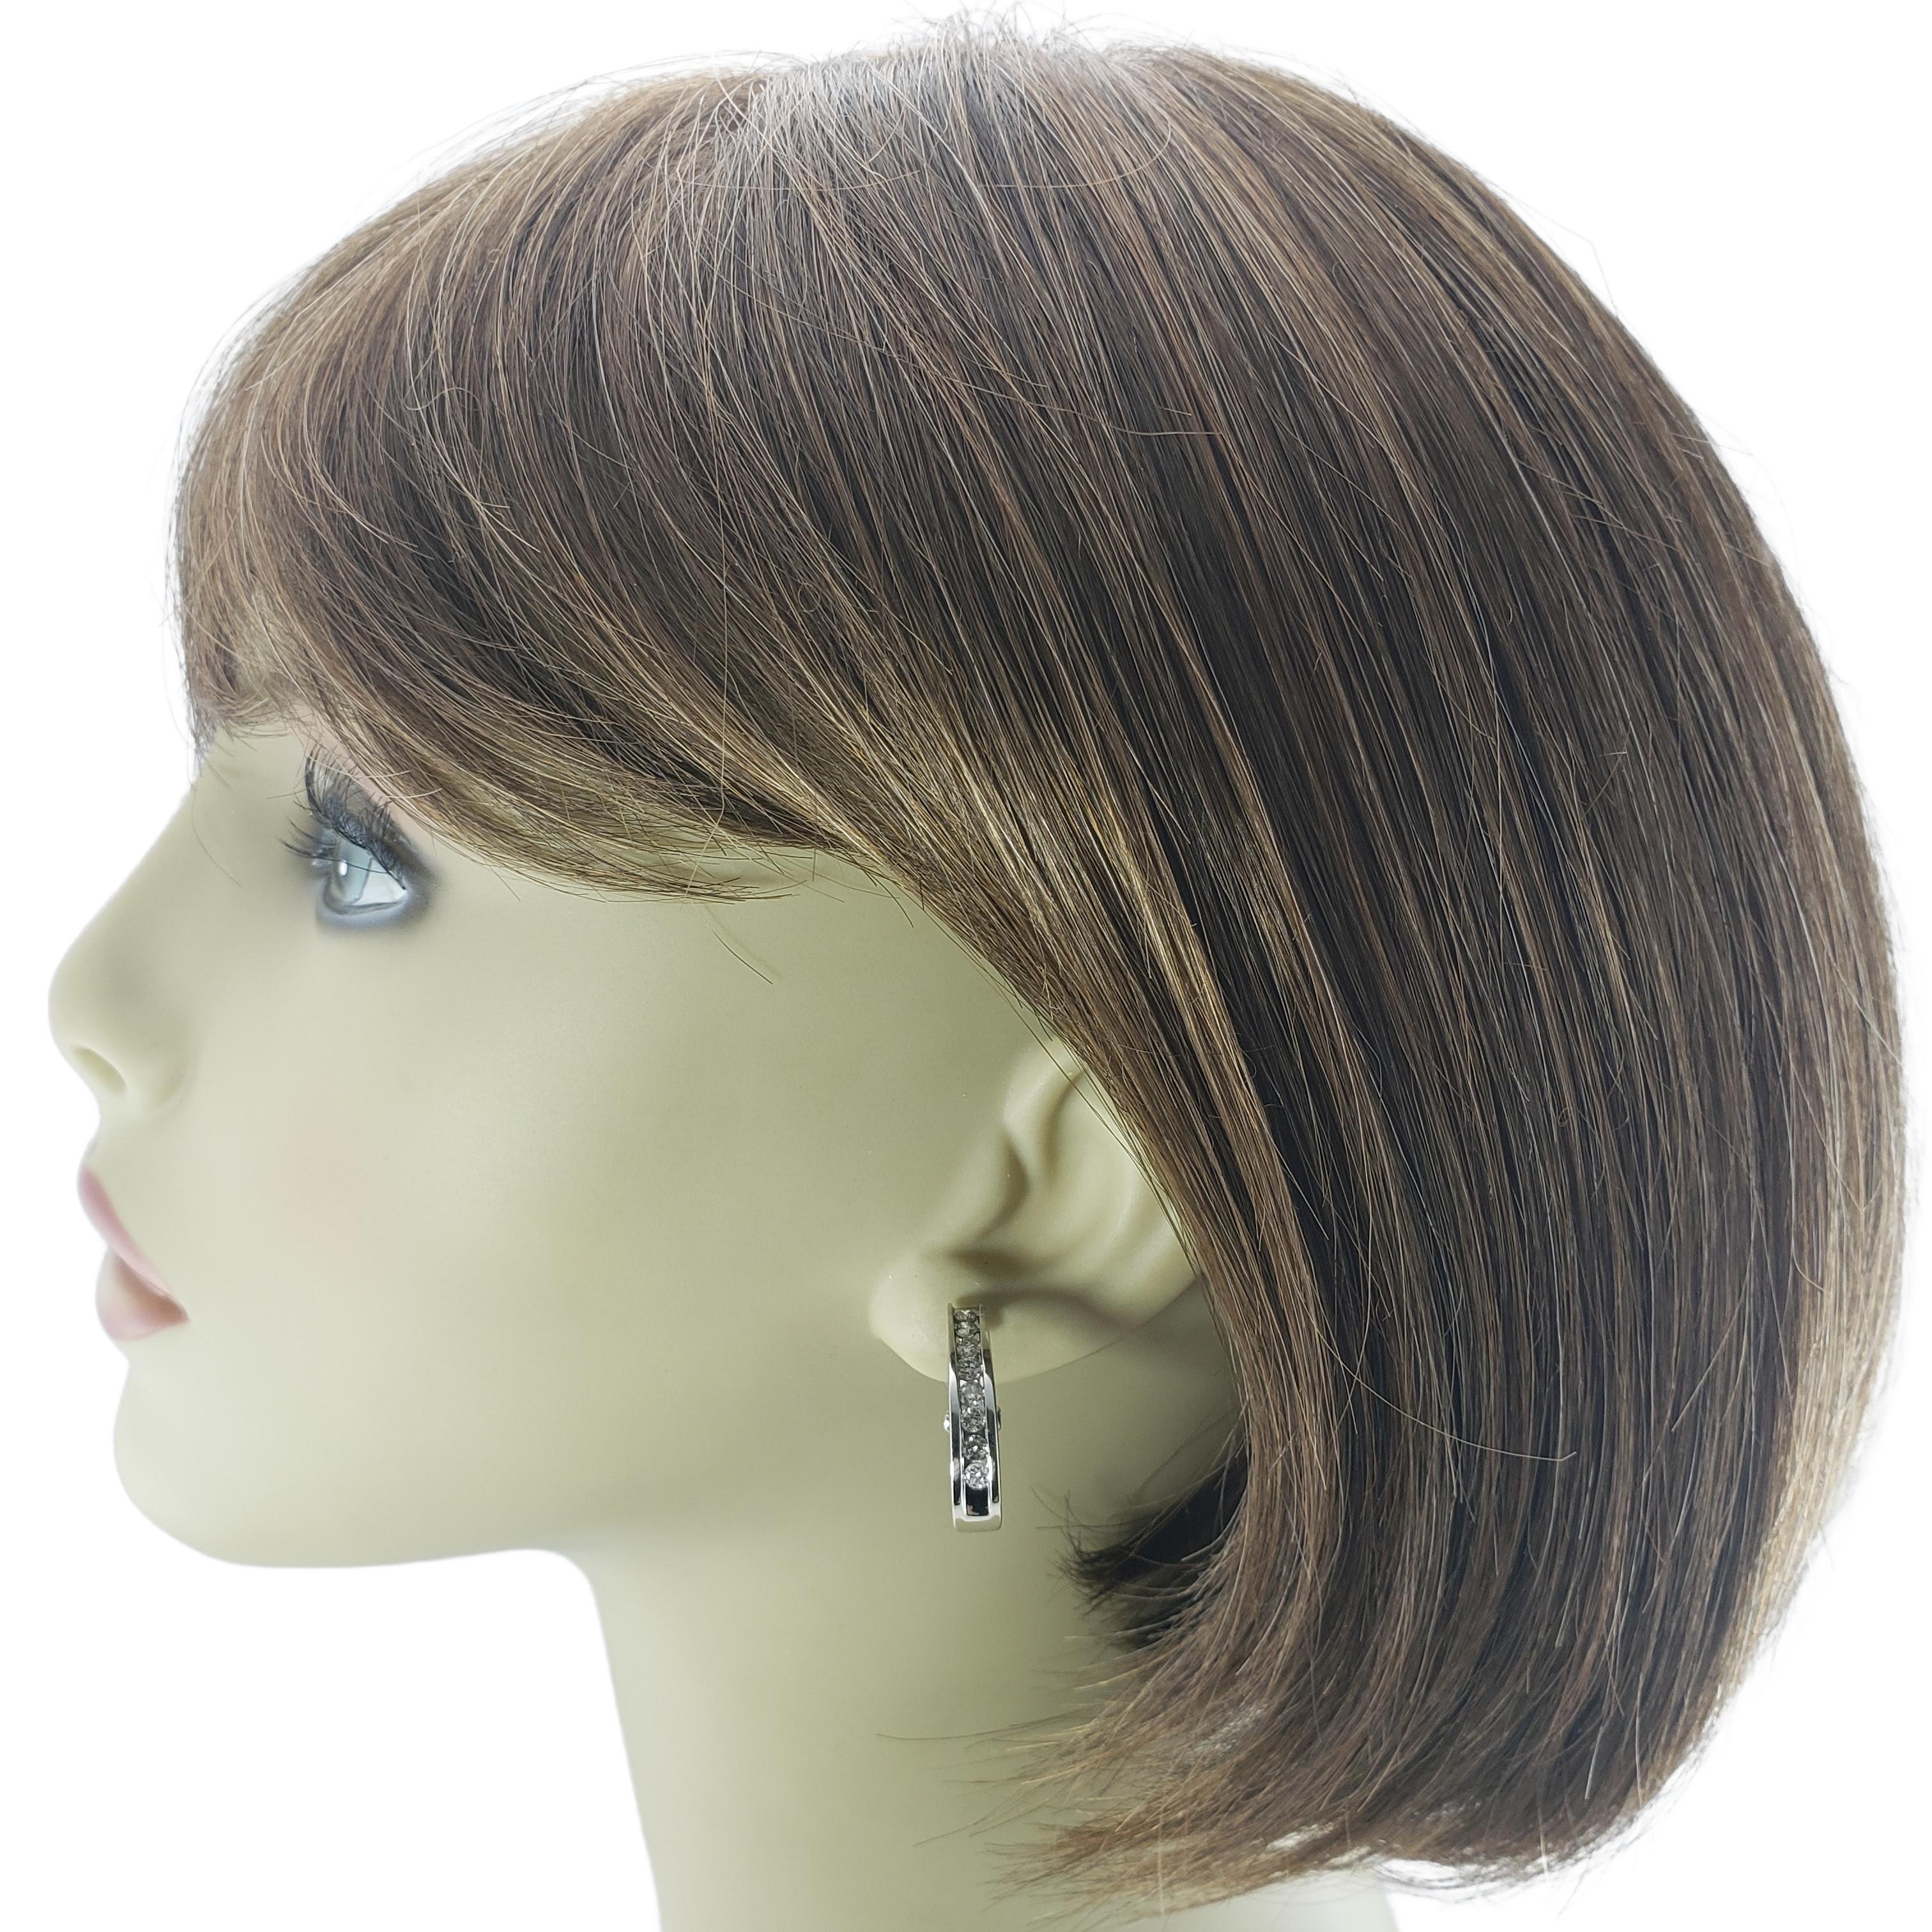 14 Karat White Gold Diamond Hoop Earrings For Sale 3